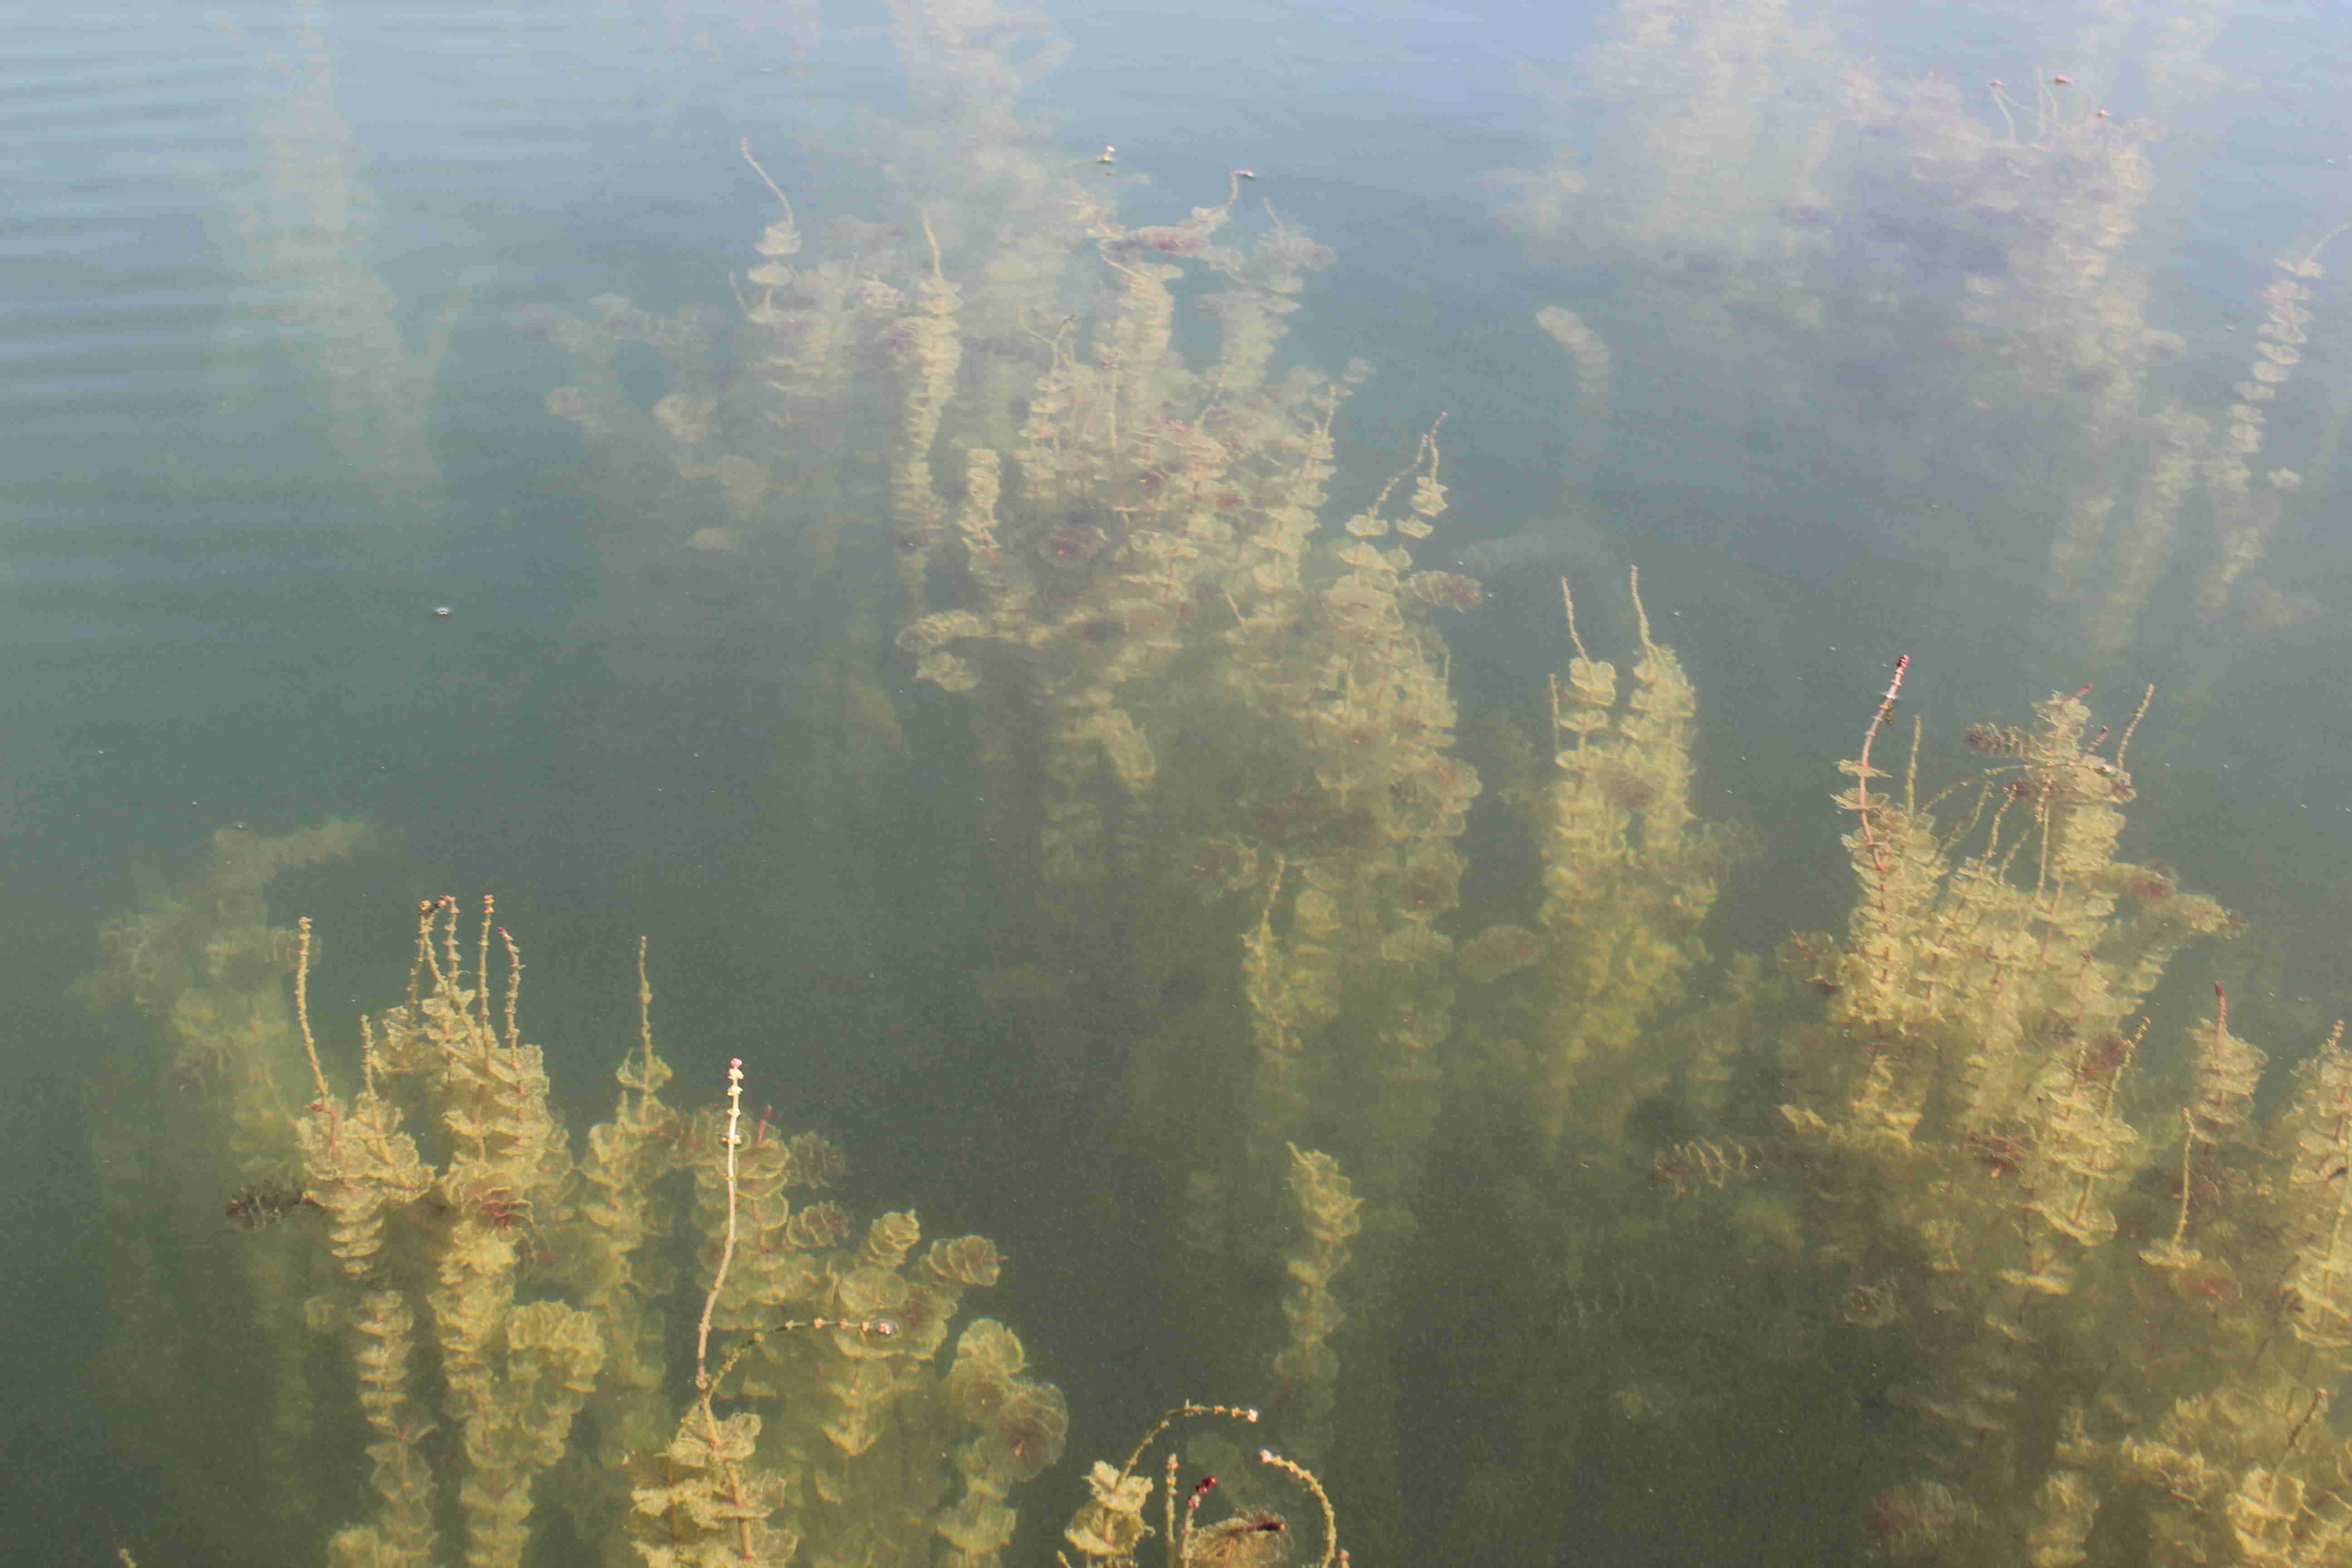 Myriophylles en épi sur le lac de Miribel (août 2015) - Crédit Eva Thiébaud